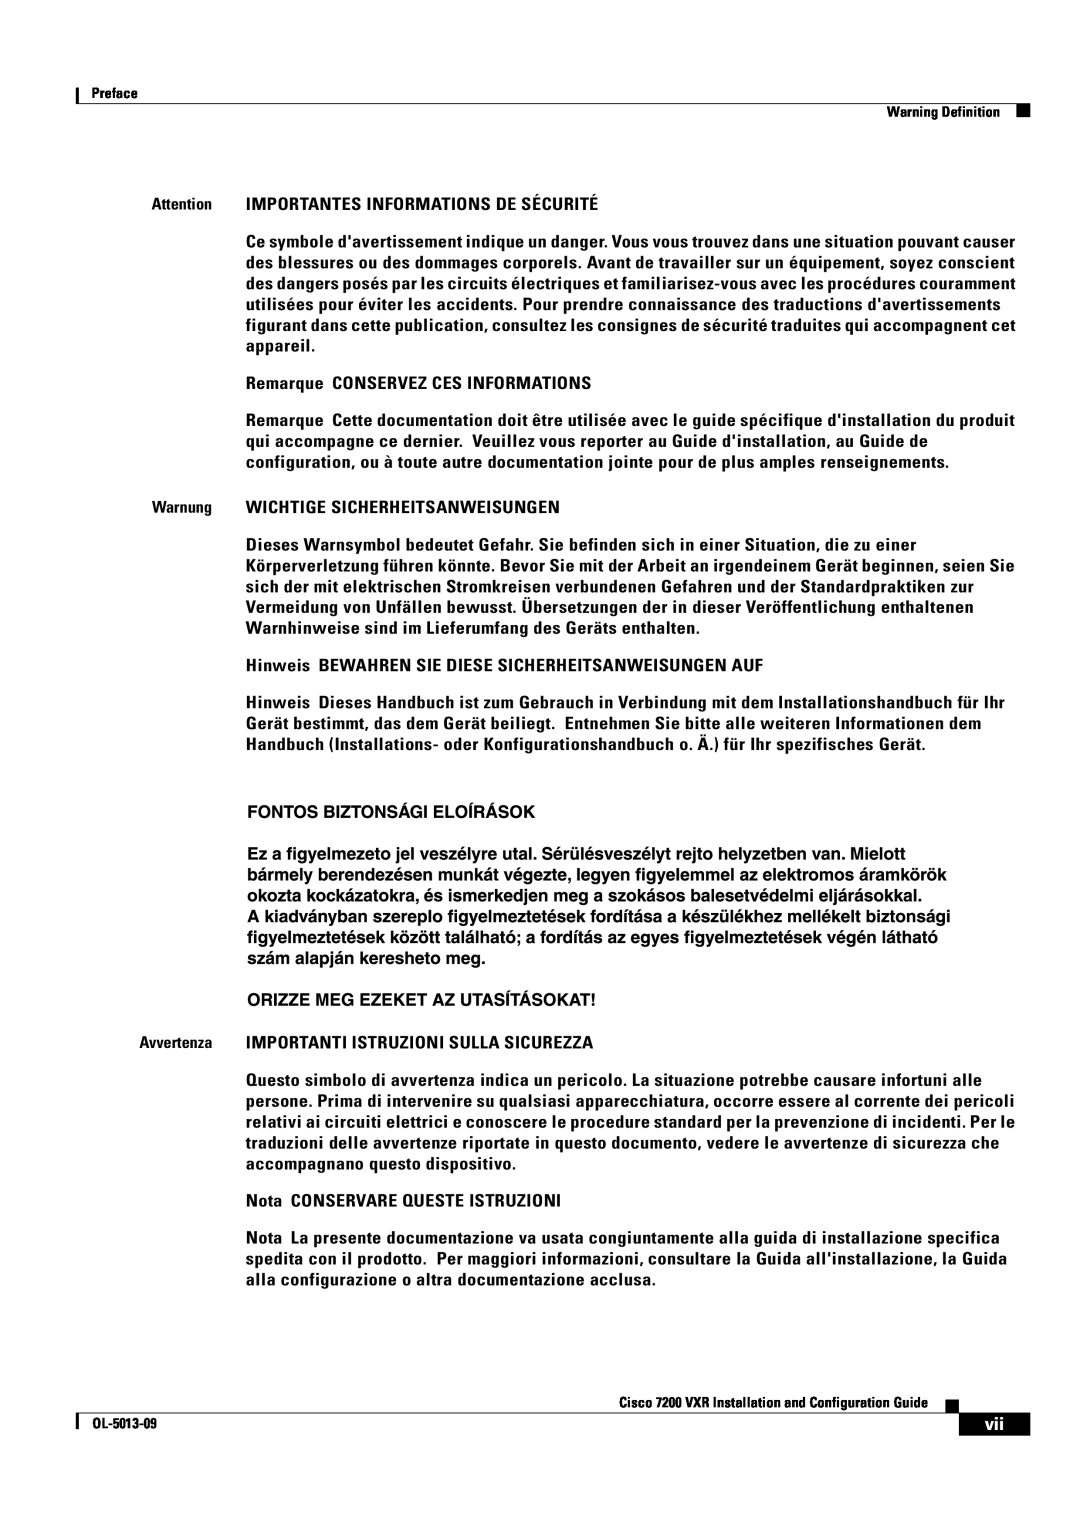 Cisco Systems 7200 VXR manual Attention IMPORTANTES INFORMATIONS DE SÉCURITÉ 